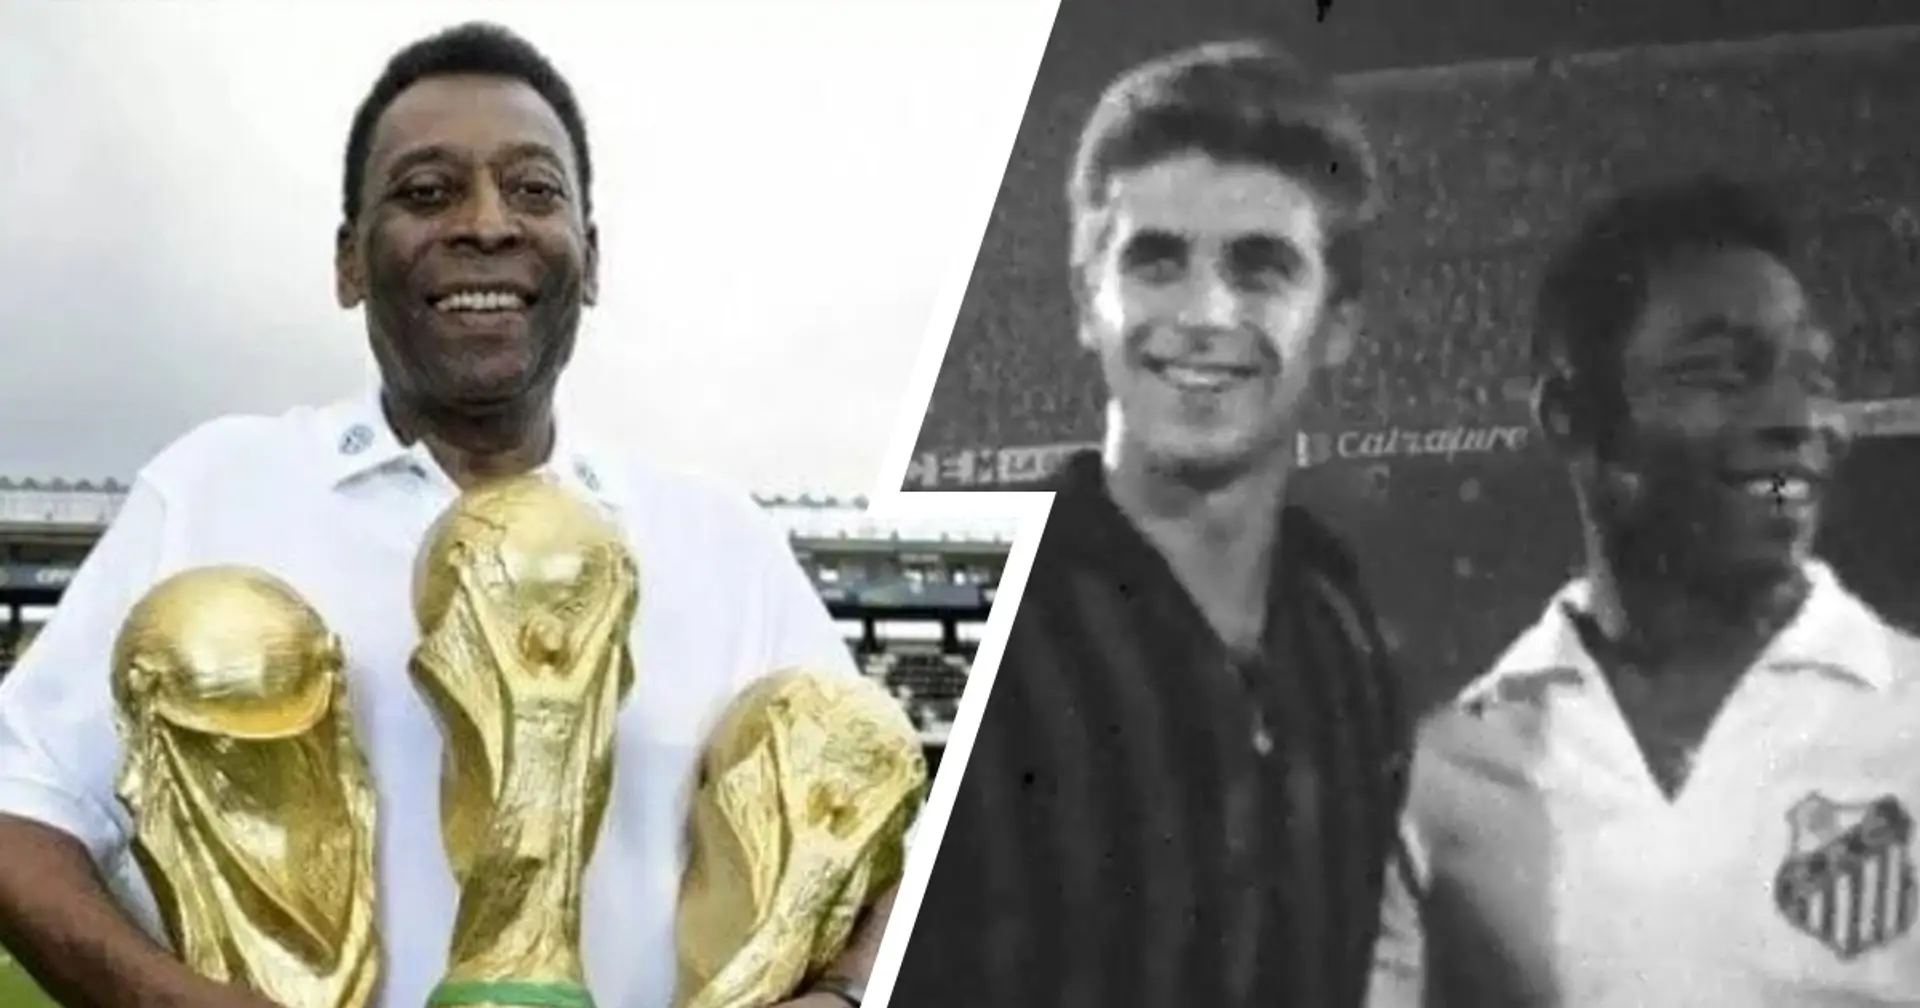 "Sarei potuto venire": I destini incrociati di Milan e Pelé, i retroscena dalla sfida del '63 all'ammissione di pochi anni fa